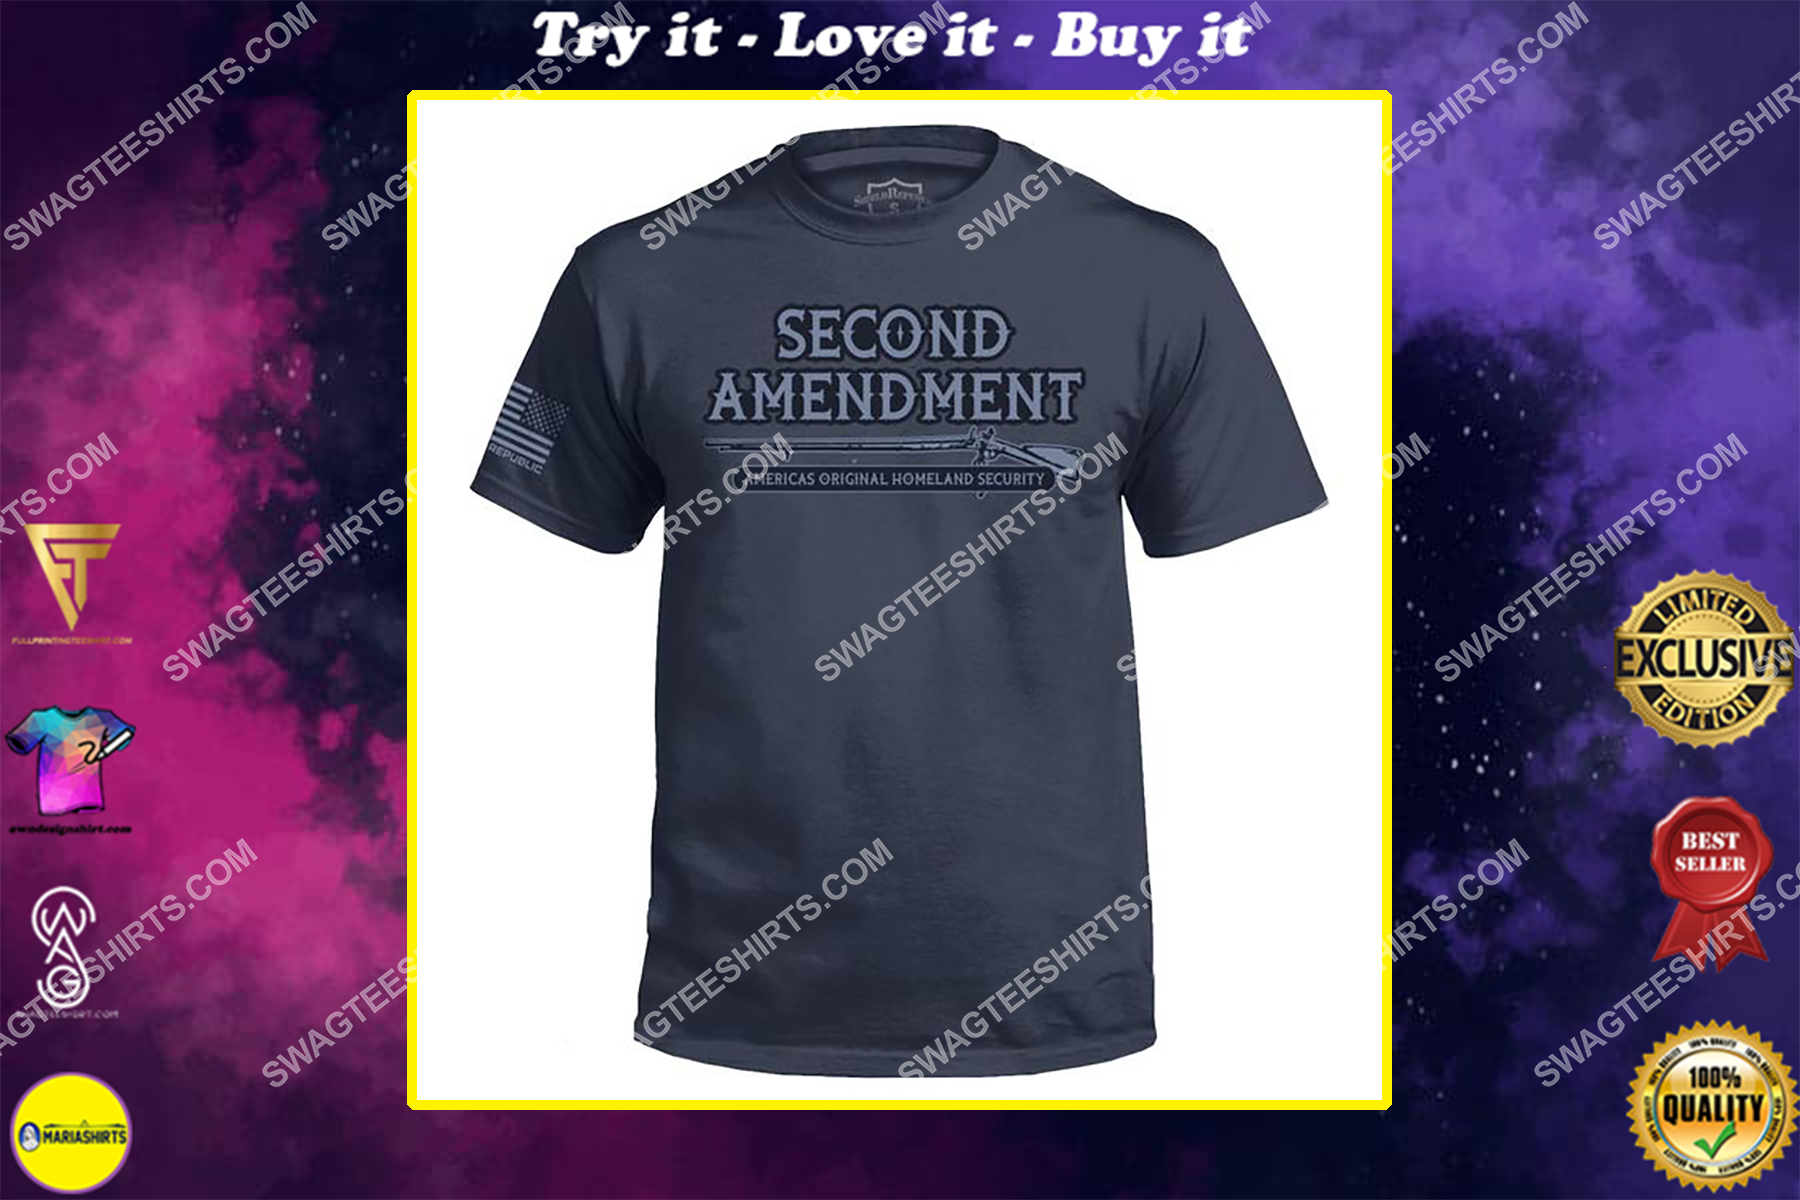 the second amendment america's original homeland security shirt